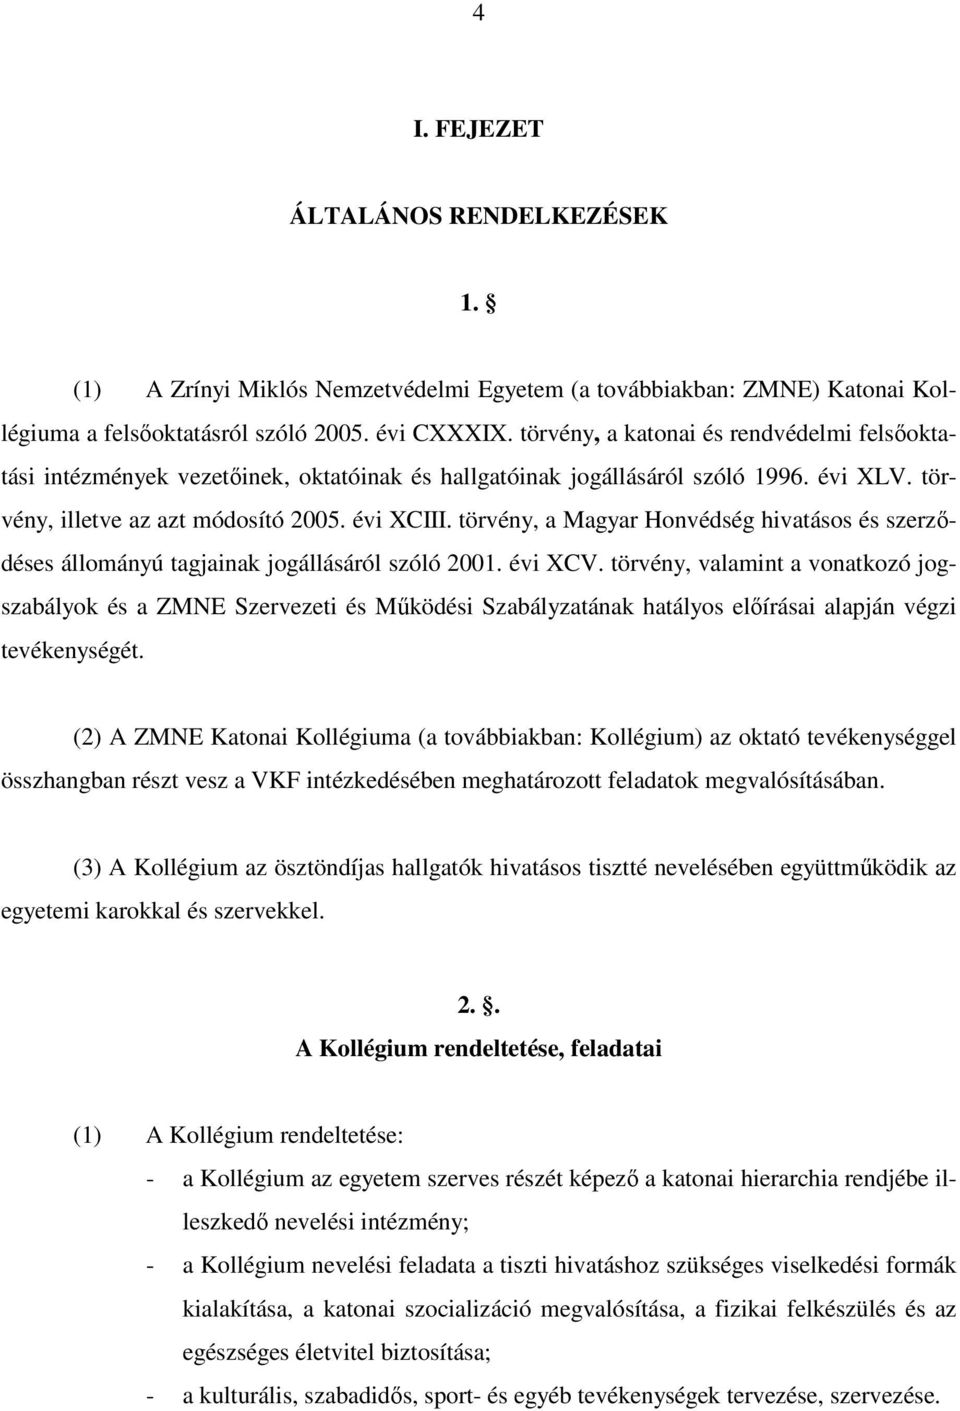 törvény, a Magyar Honvédség hivatásos és szerződéses állományú tagjainak jogállásáról szóló 2001. évi XCV.